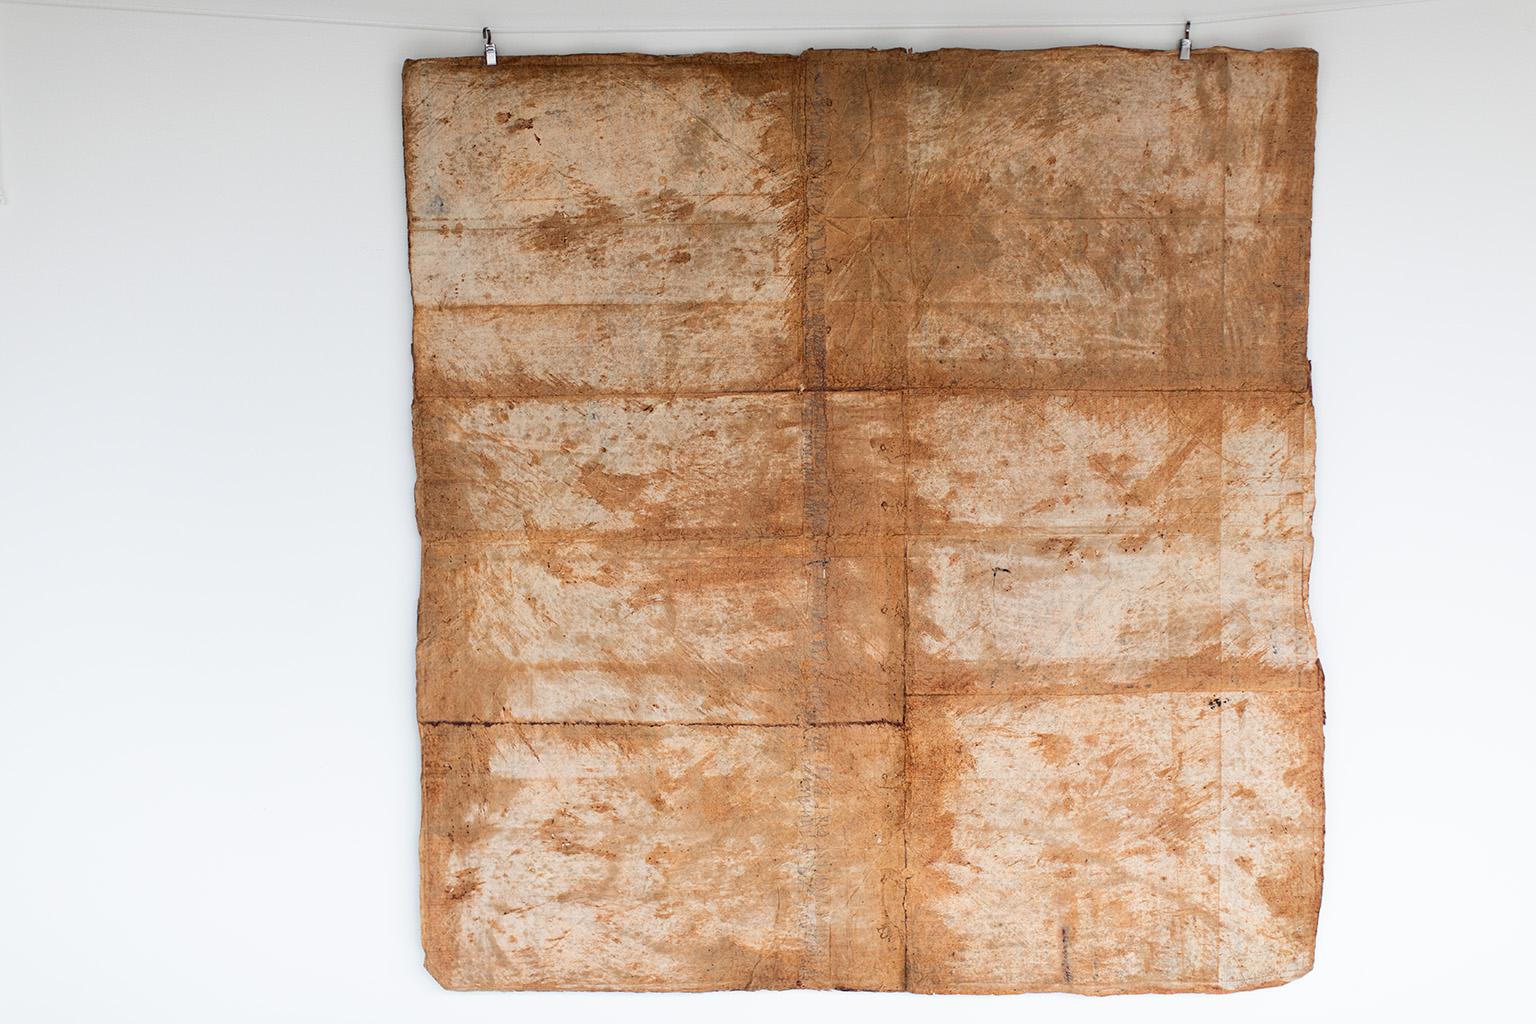 Zeitgenössische Kunst, Antike Textilien, Papierkunst, Textilien - Kuriositätenkabinett (Braun), Abstract Painting, von Addison Jones